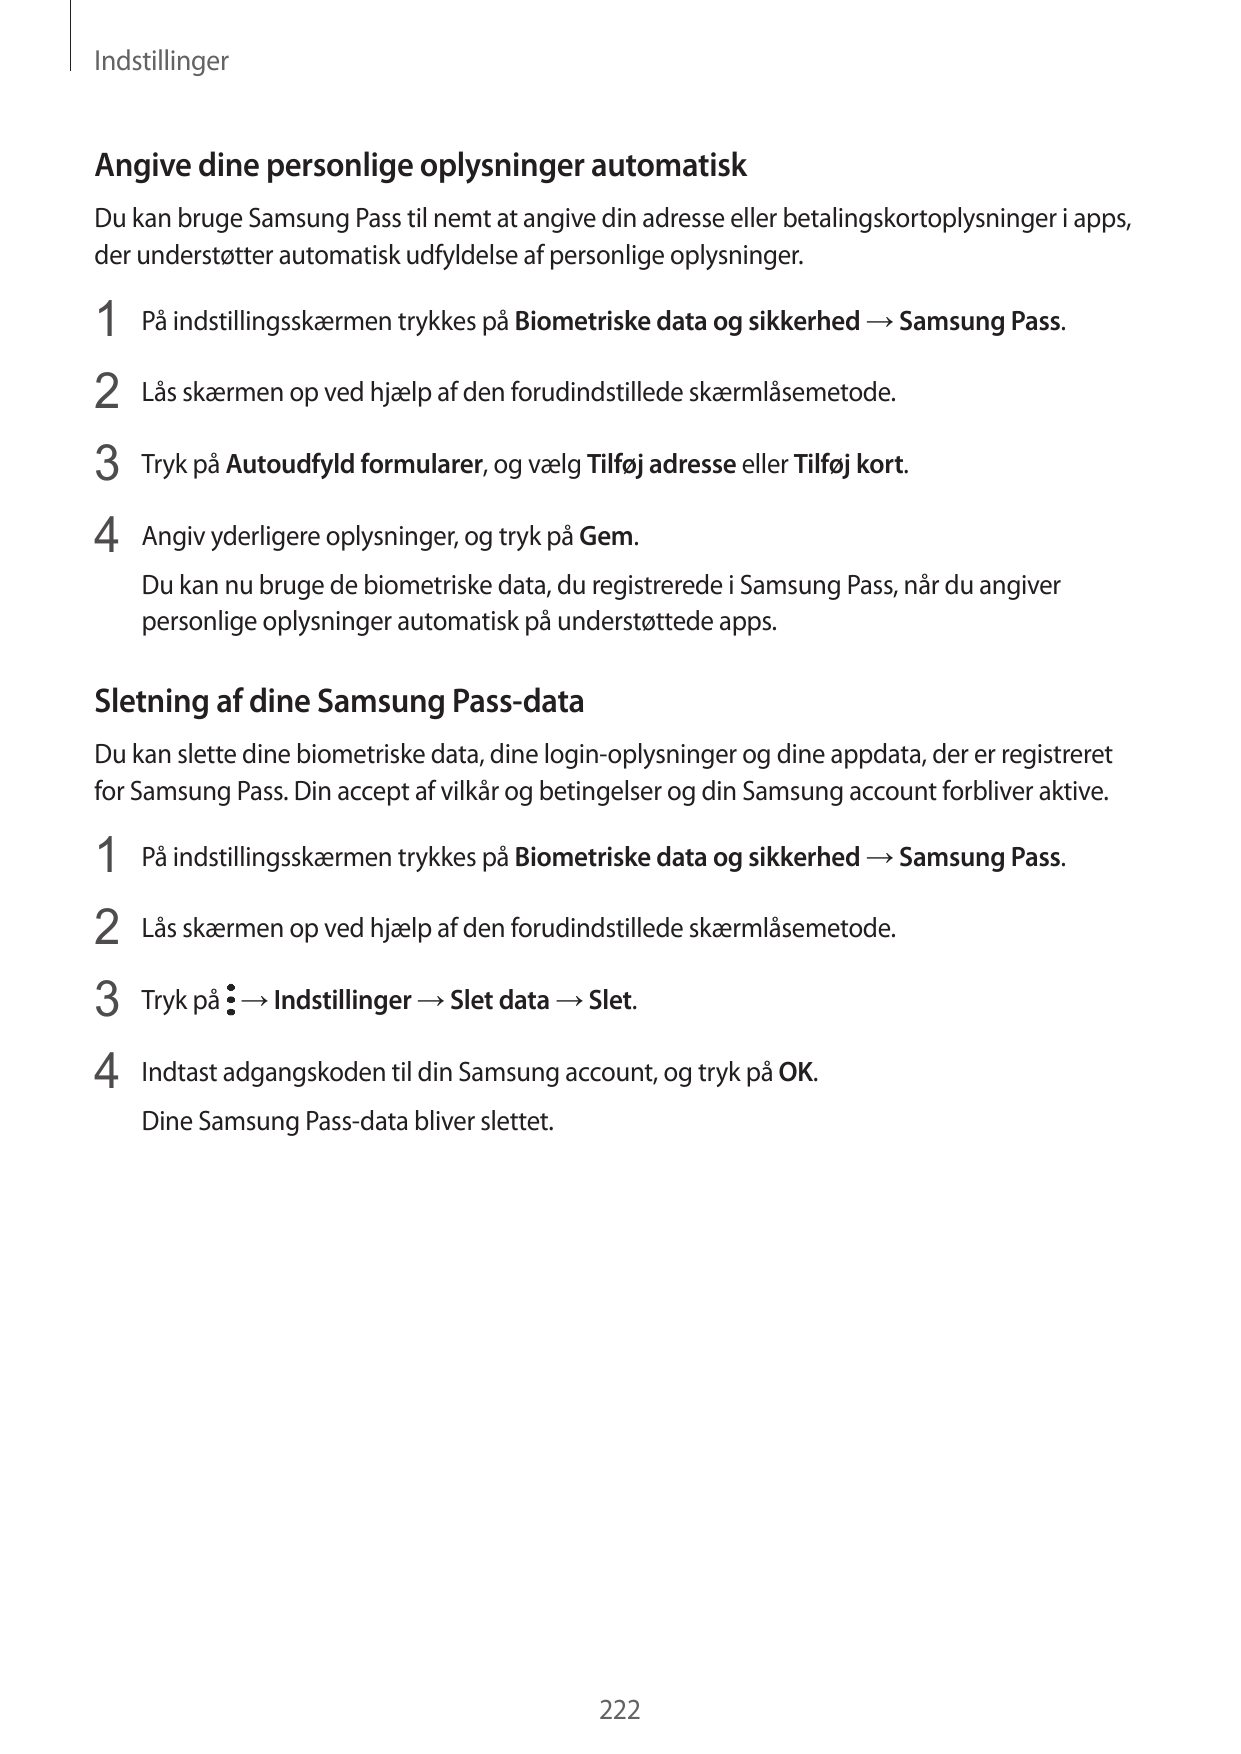 IndstillingerAngive dine personlige oplysninger automatiskDu kan bruge Samsung Pass til nemt at angive din adresse eller betalin